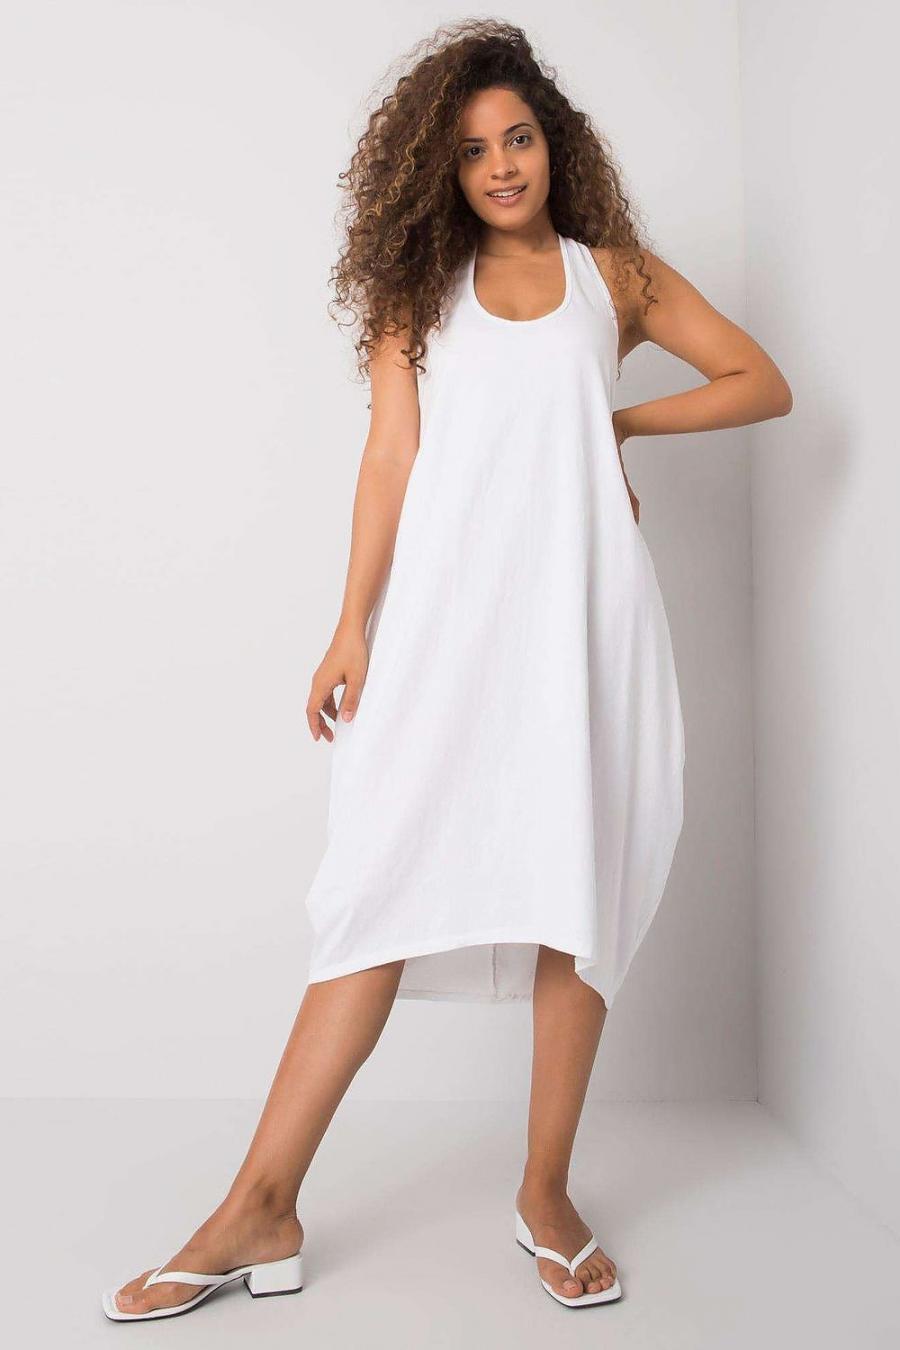 Ostatní značky šaty dámské 166074 - Bílá - velikost S